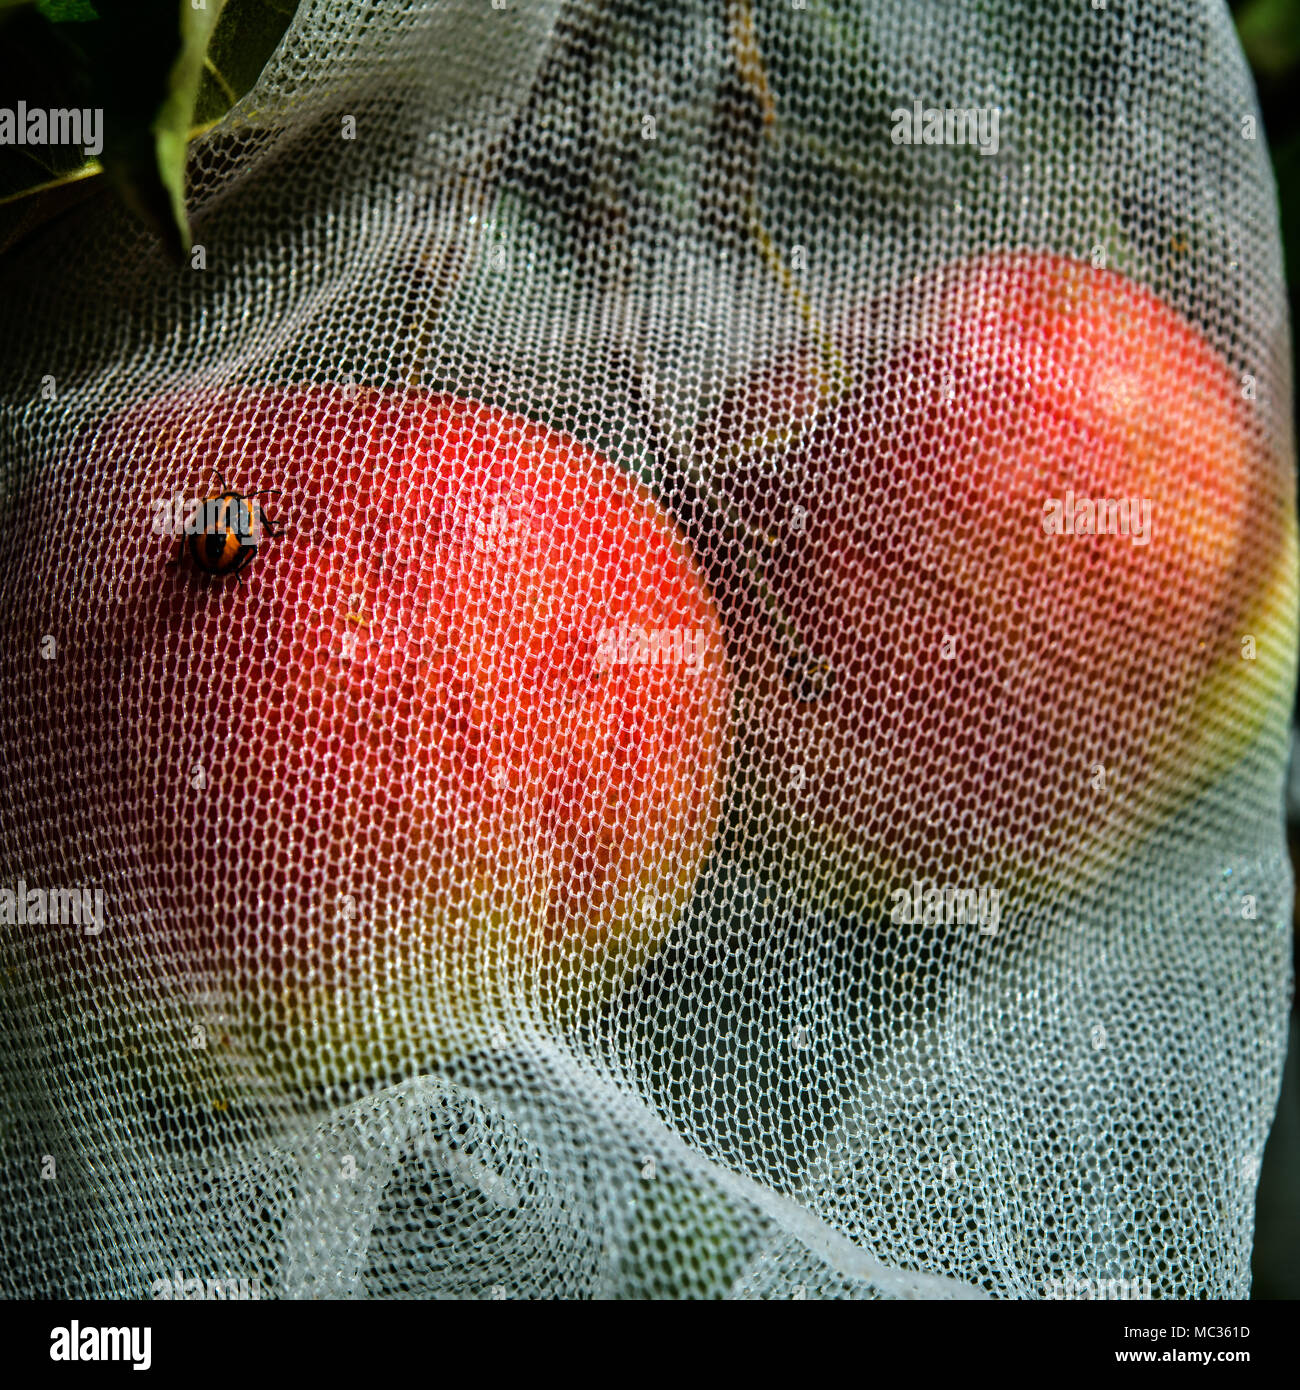 Le mele in crescita in net mendica sicuro da Bird e danno di insetto Foto Stock